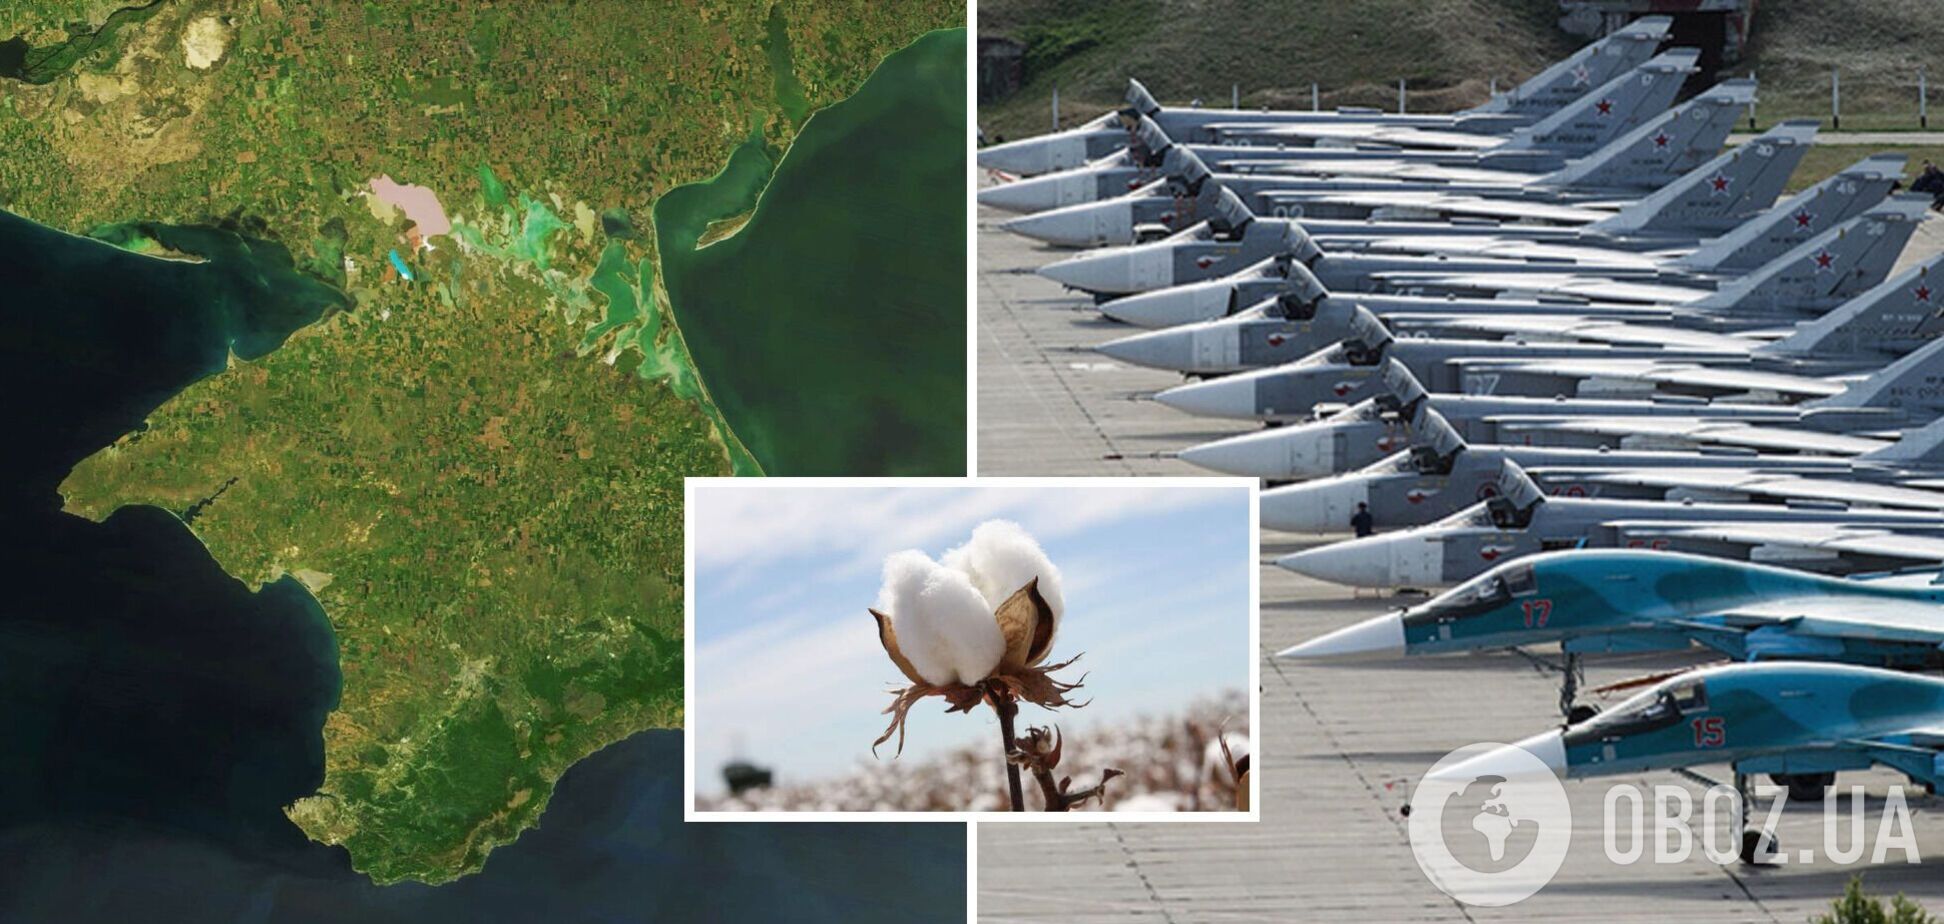 В оккупированном Крыму слышали взрывы в районе аэродрома 'Бельбек': оккупанты говорят об 'учениях'